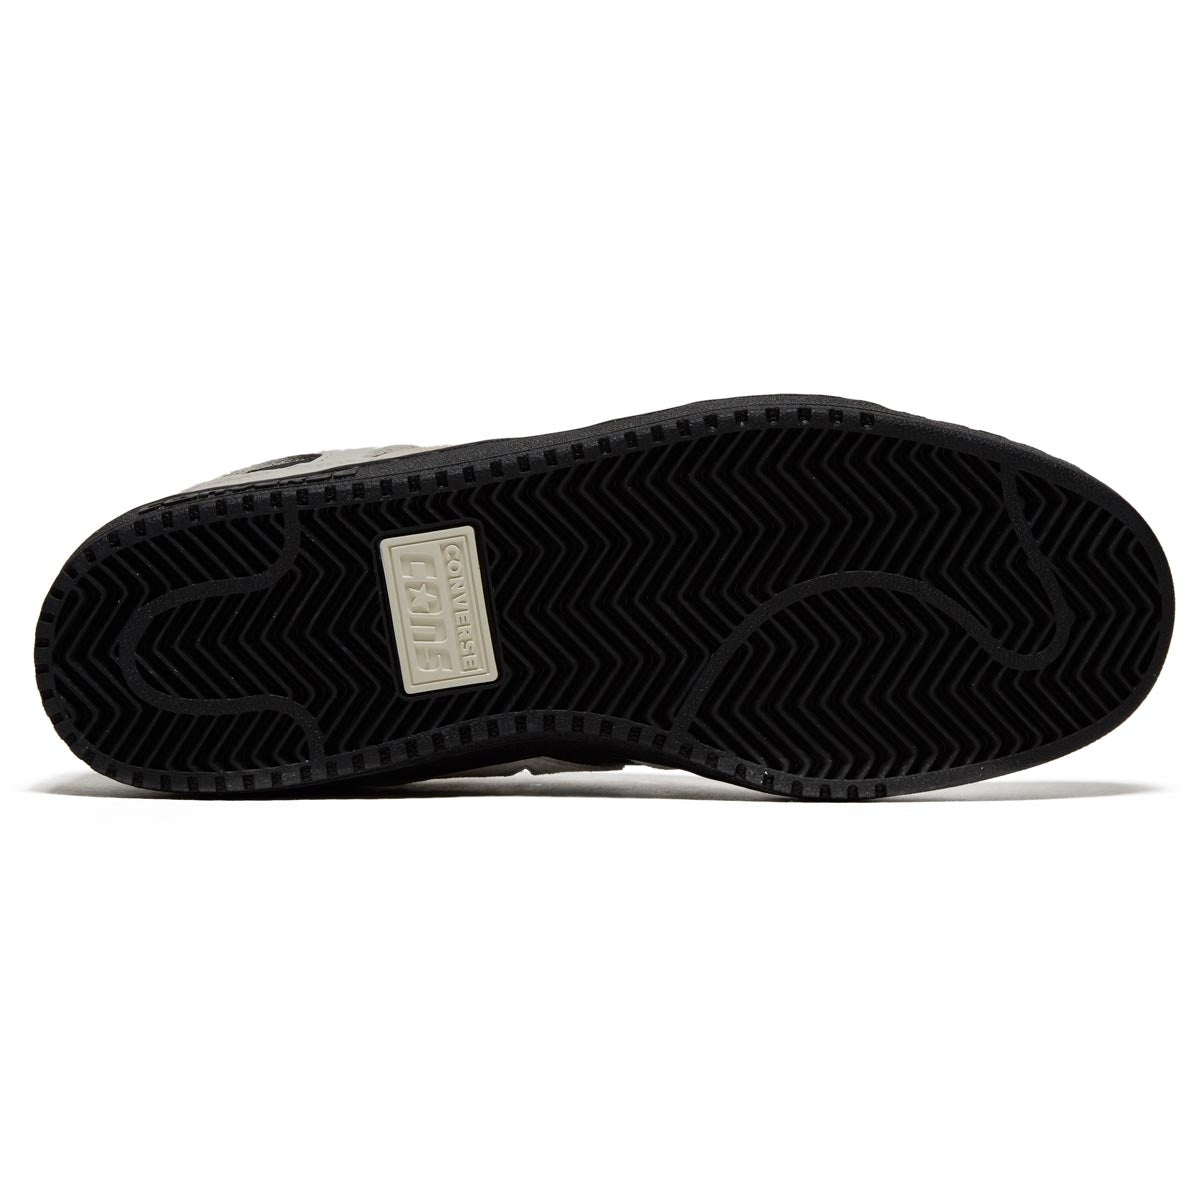 Converse AS-1 Pro Shoes - Egret/Black/Black image 4